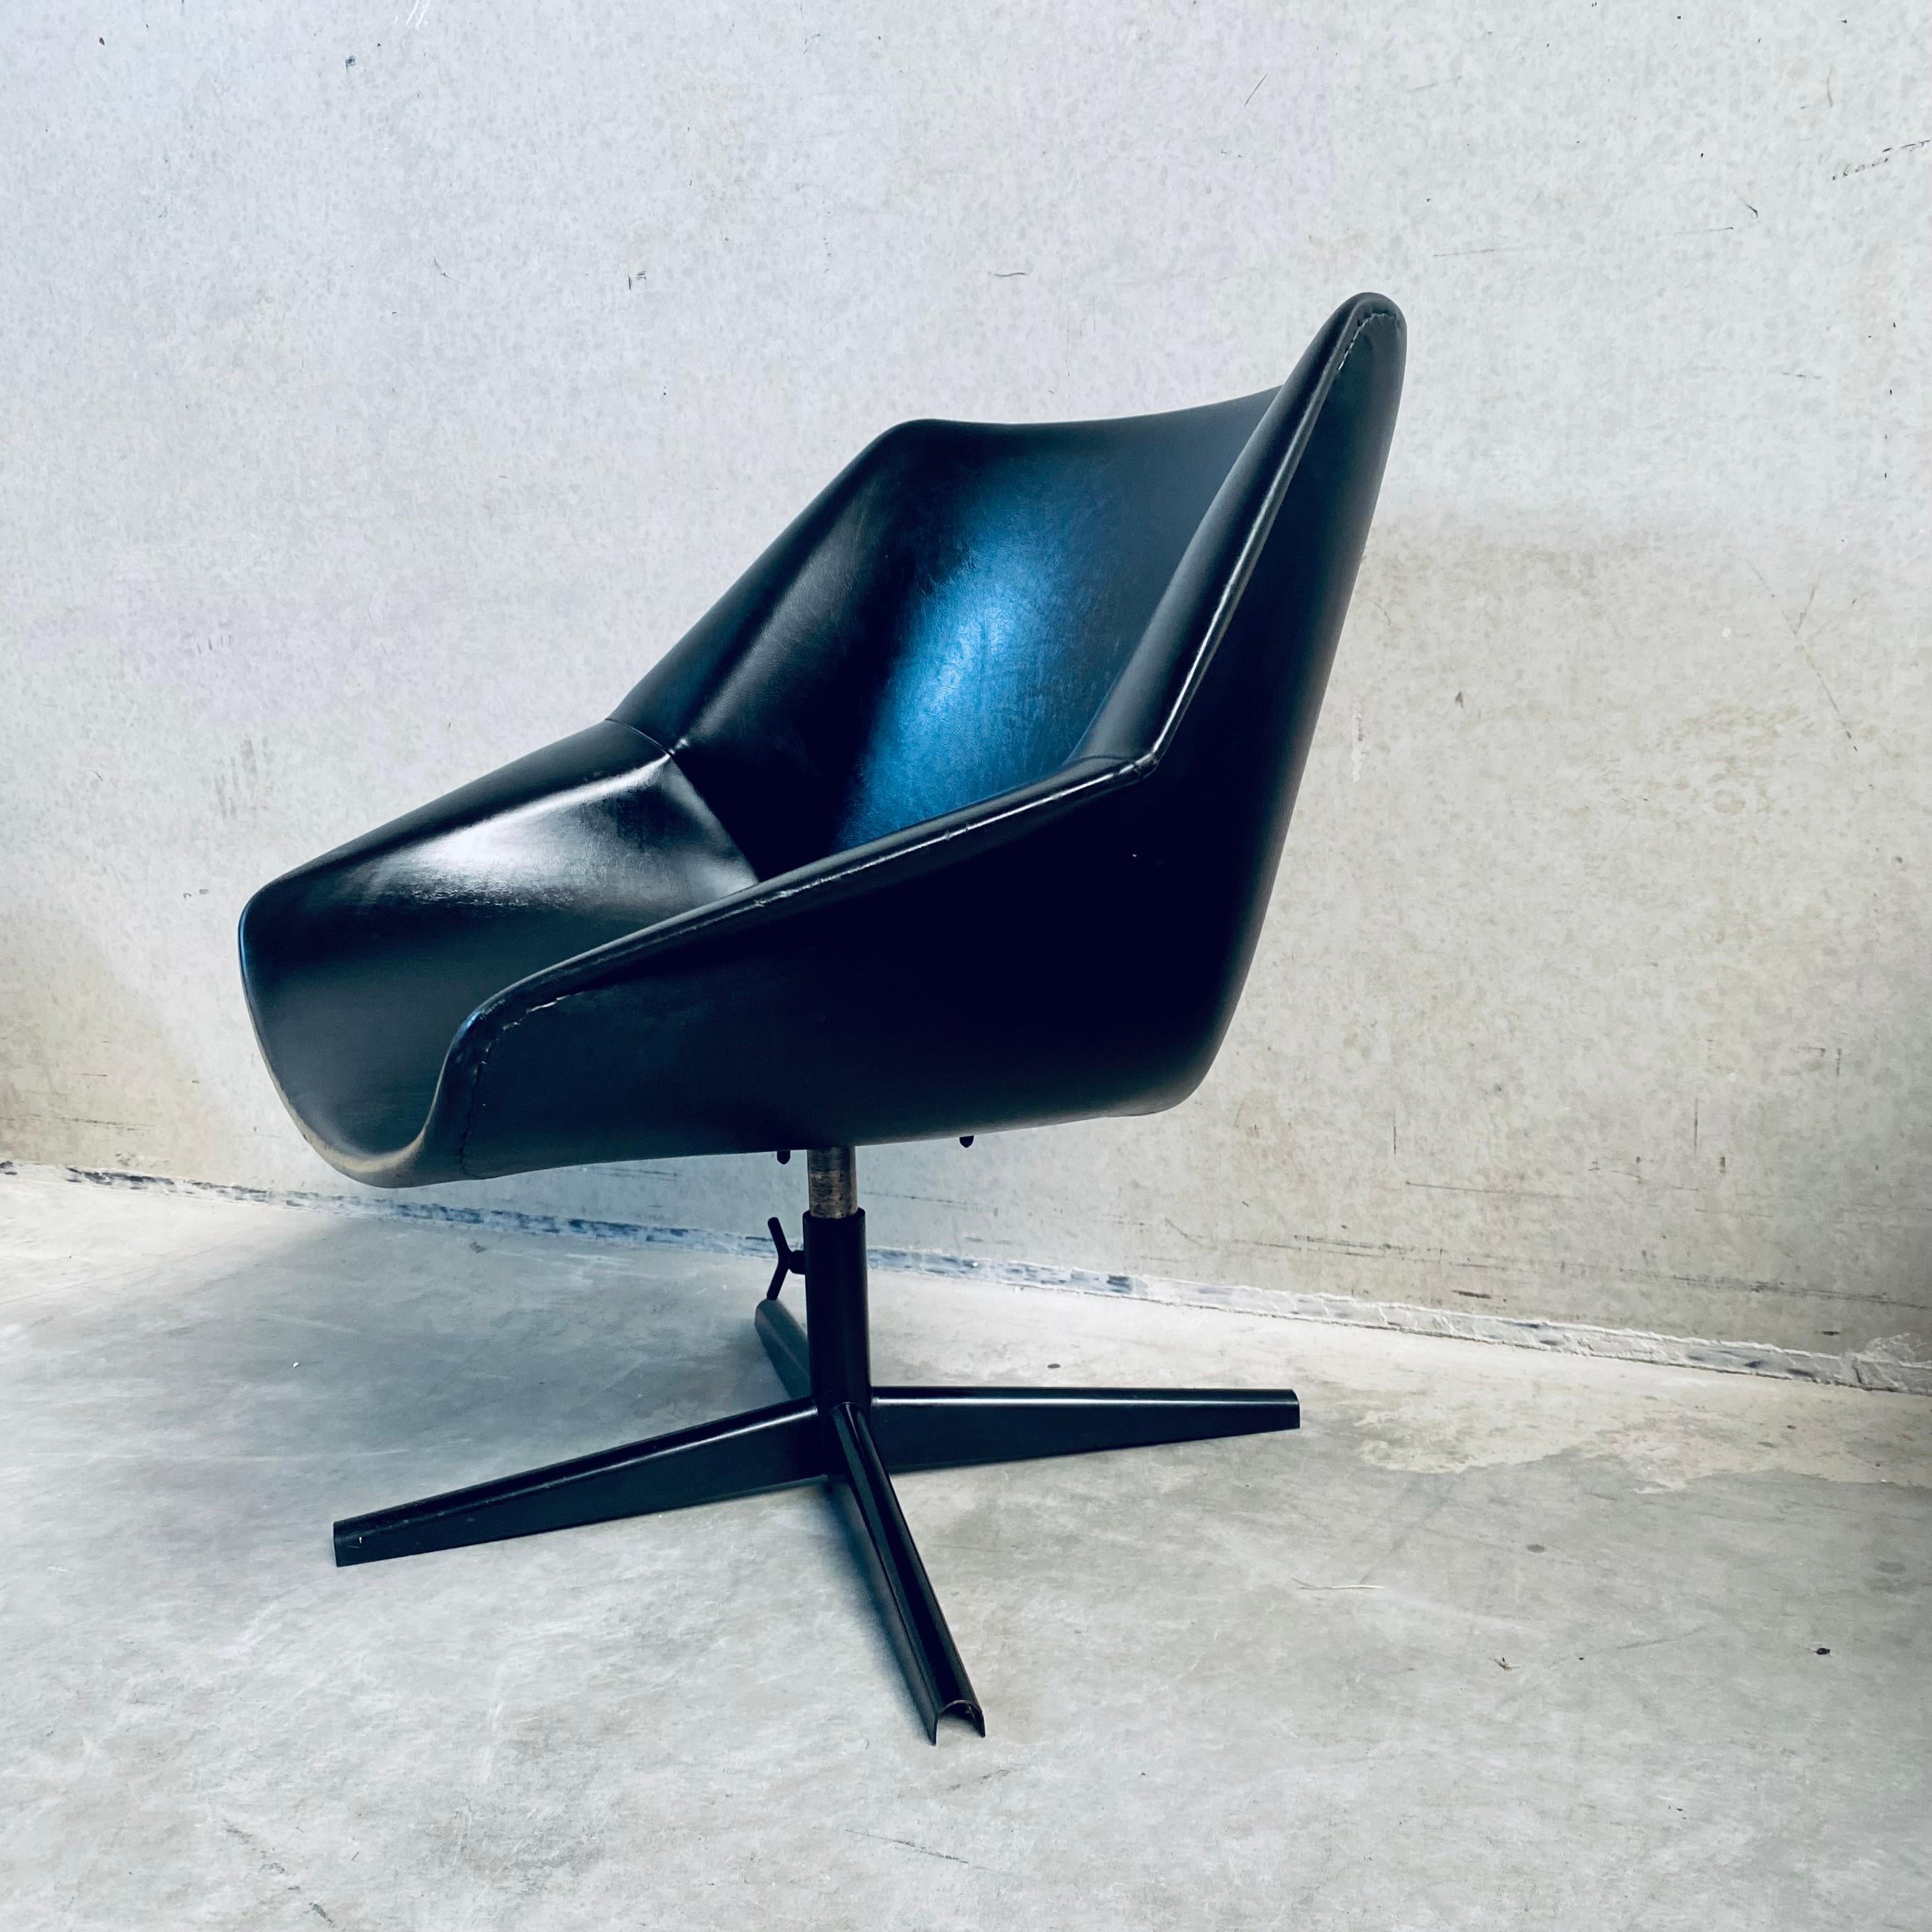 Erleben Sie zeitlose Raffinesse mit dem kultigen Mid-Century-Stuhl Pastoe FM08 Swiffle, einem Meisterwerk des Designs von Cees Braakman aus dem Jahr 1959. Der von dem visionären Designer für Pastoe entworfene FM08-Drehstuhl verbindet Form und